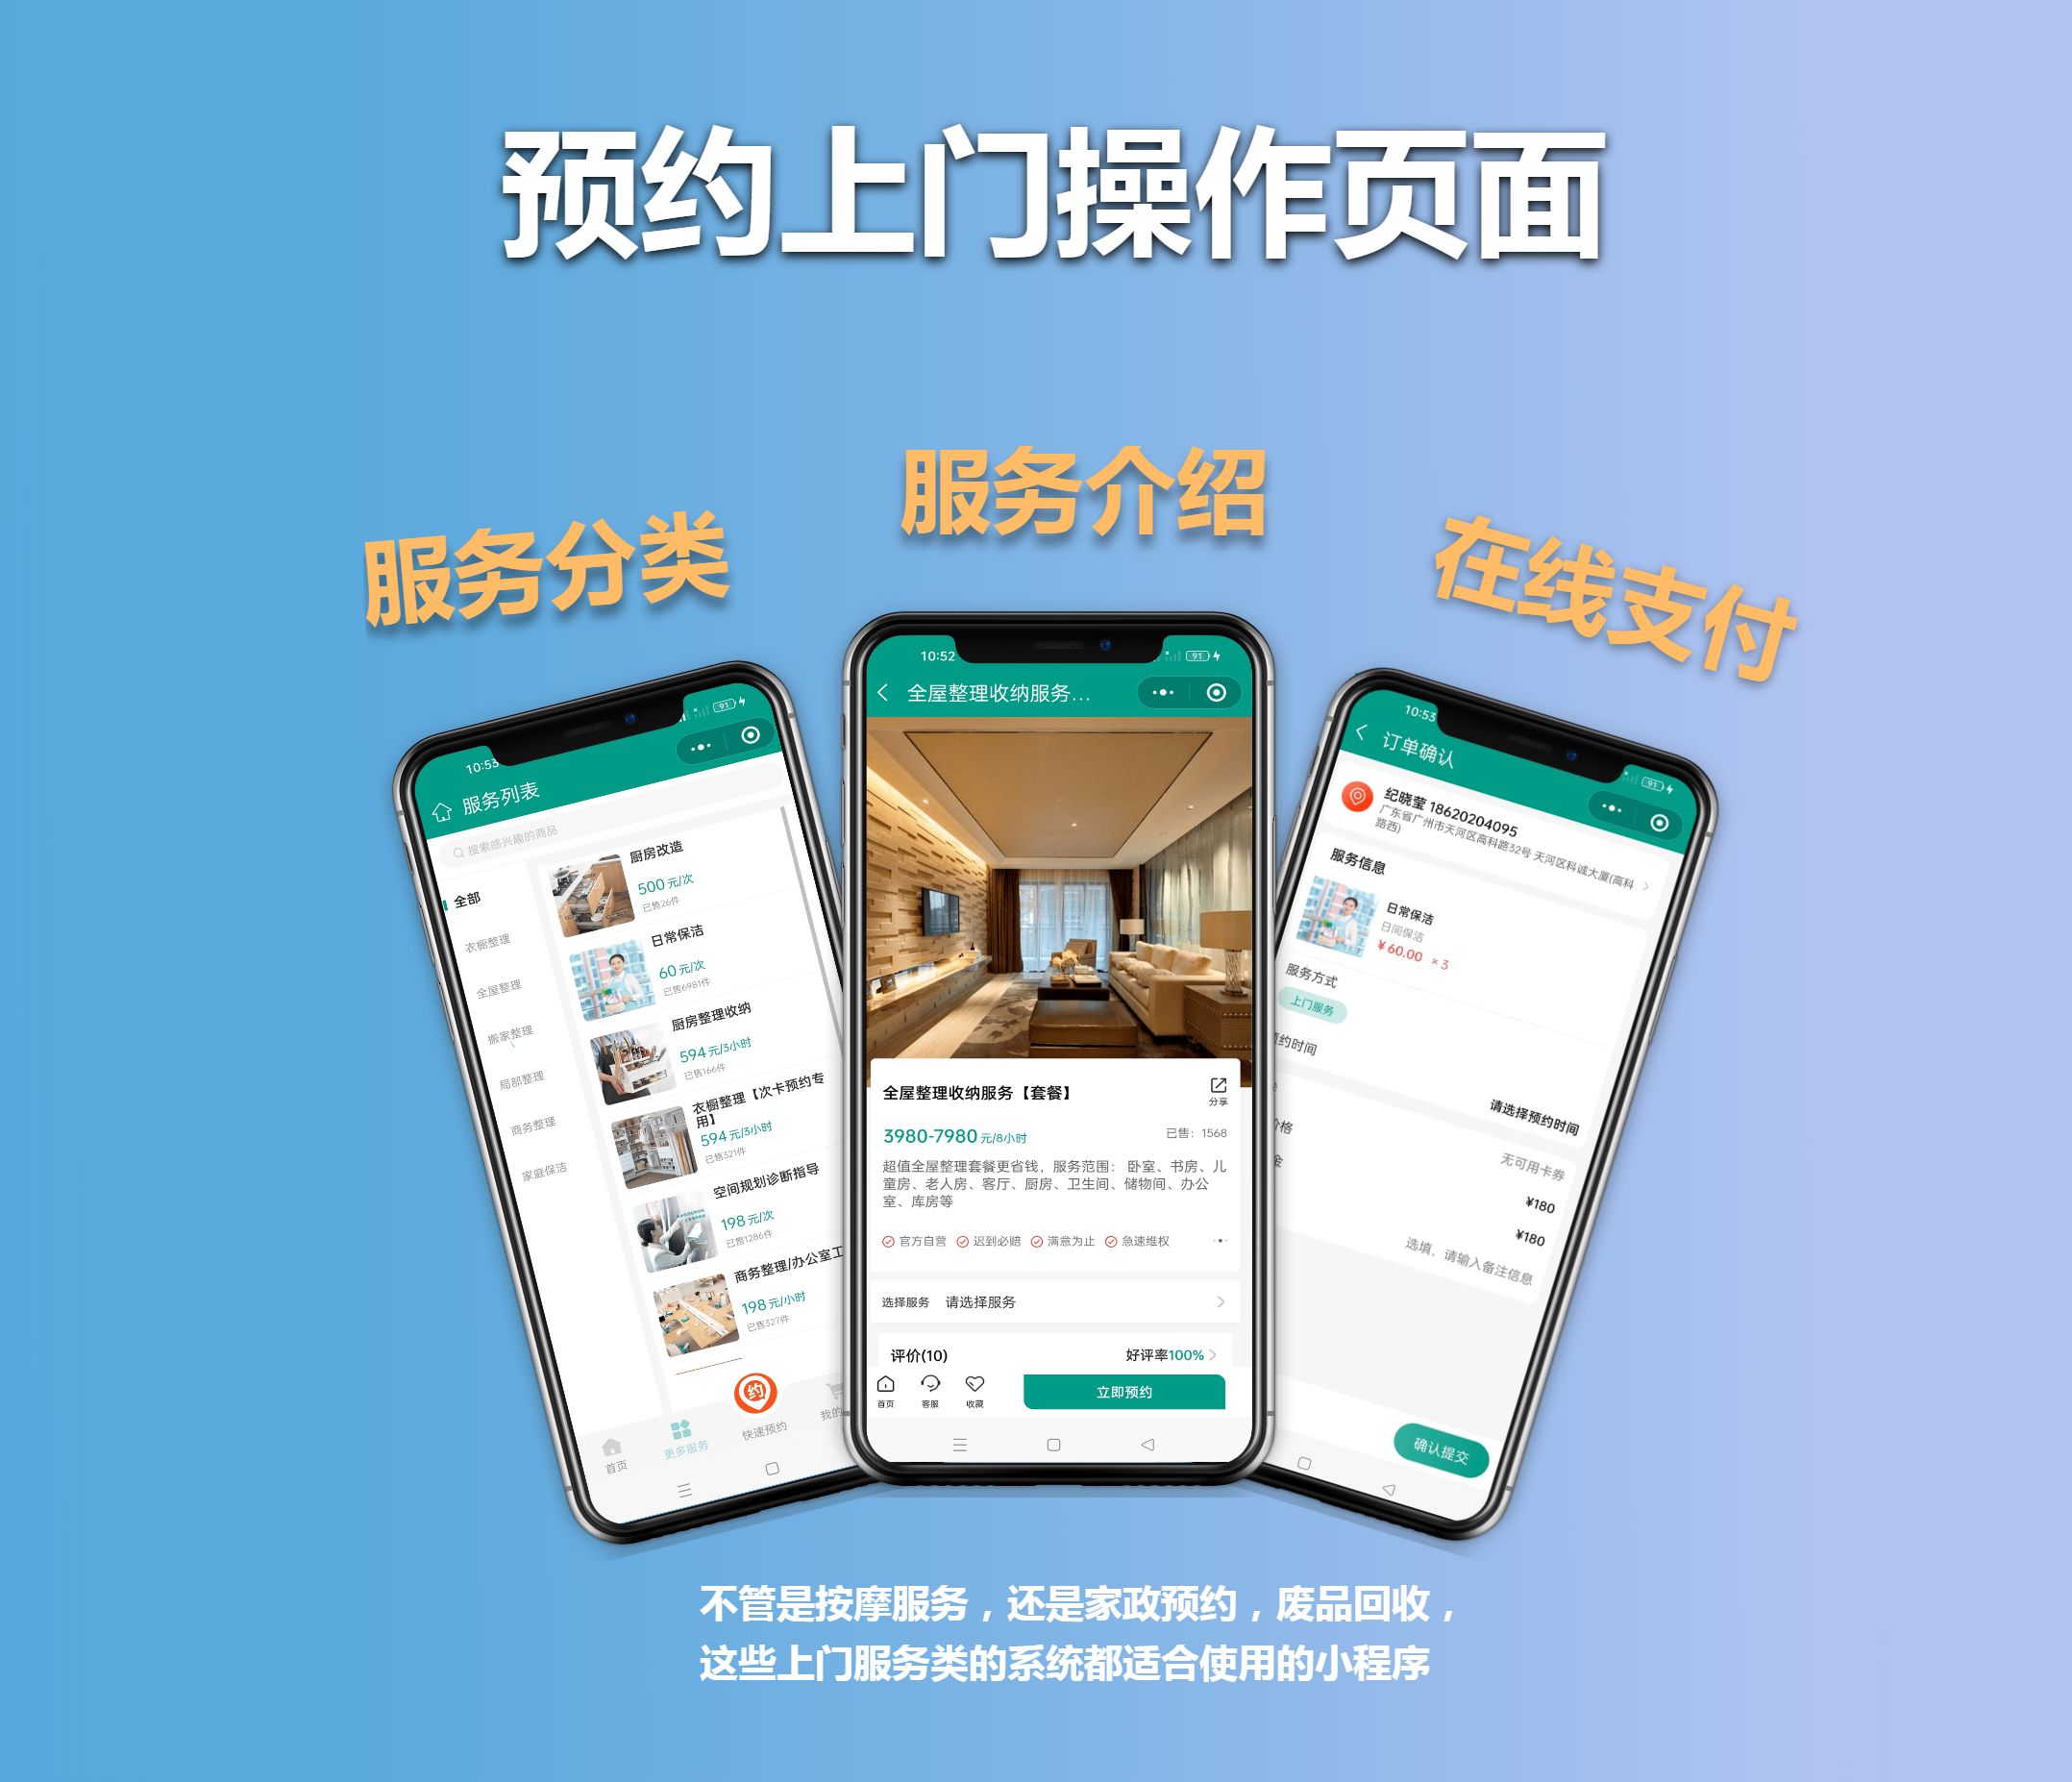 足疗按摩微信公众号开发营销方案-广州开发